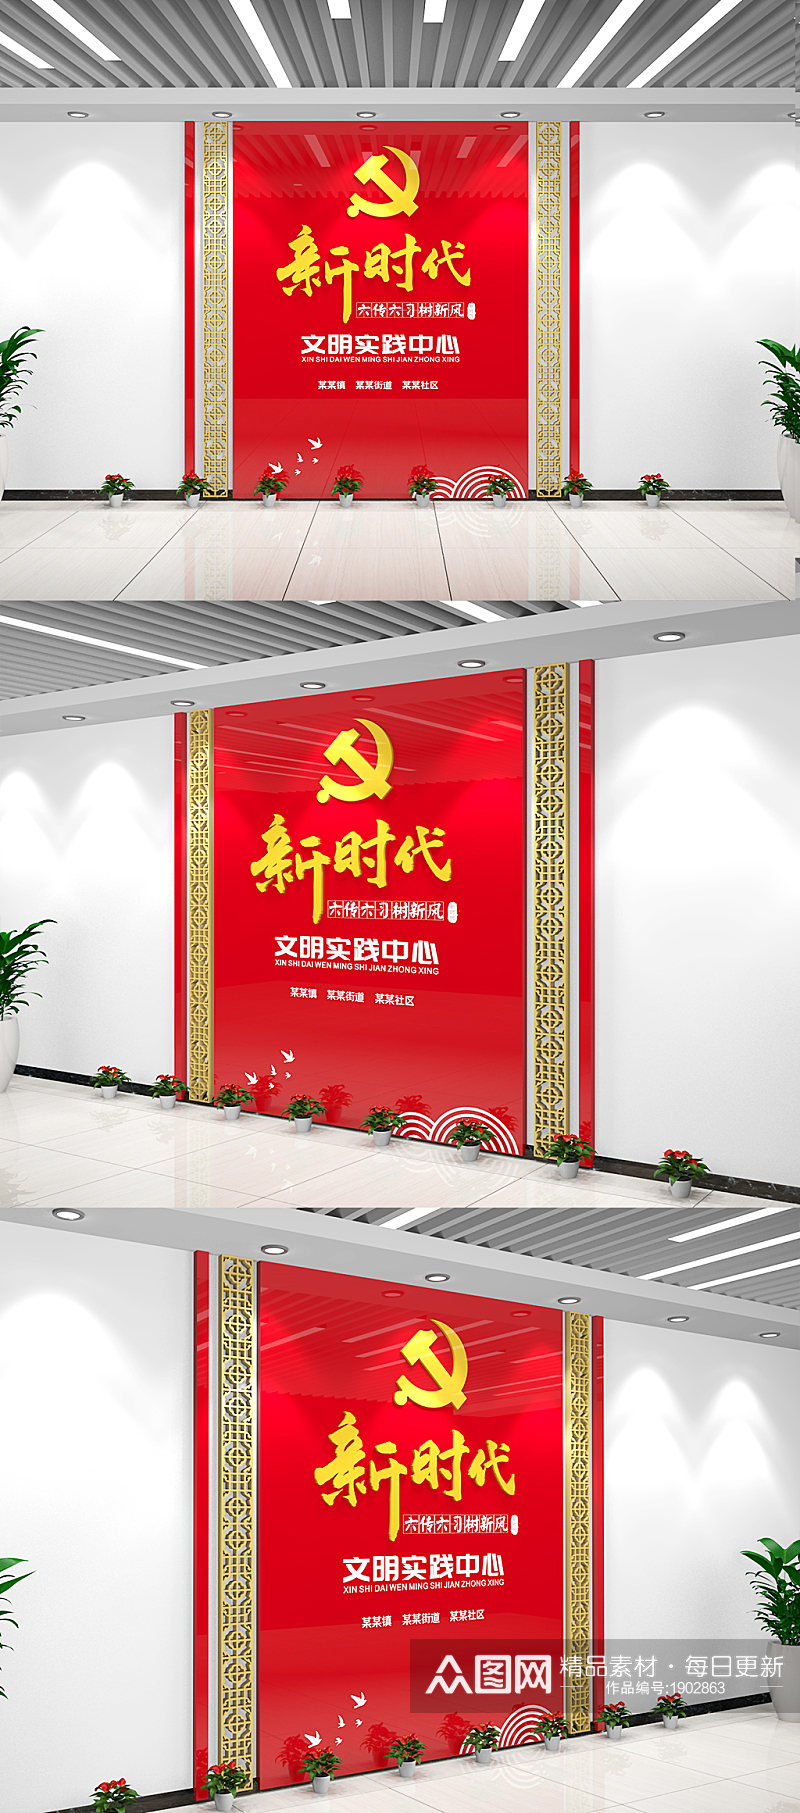 红色中式新时代文明实践中心前台形象墙素材